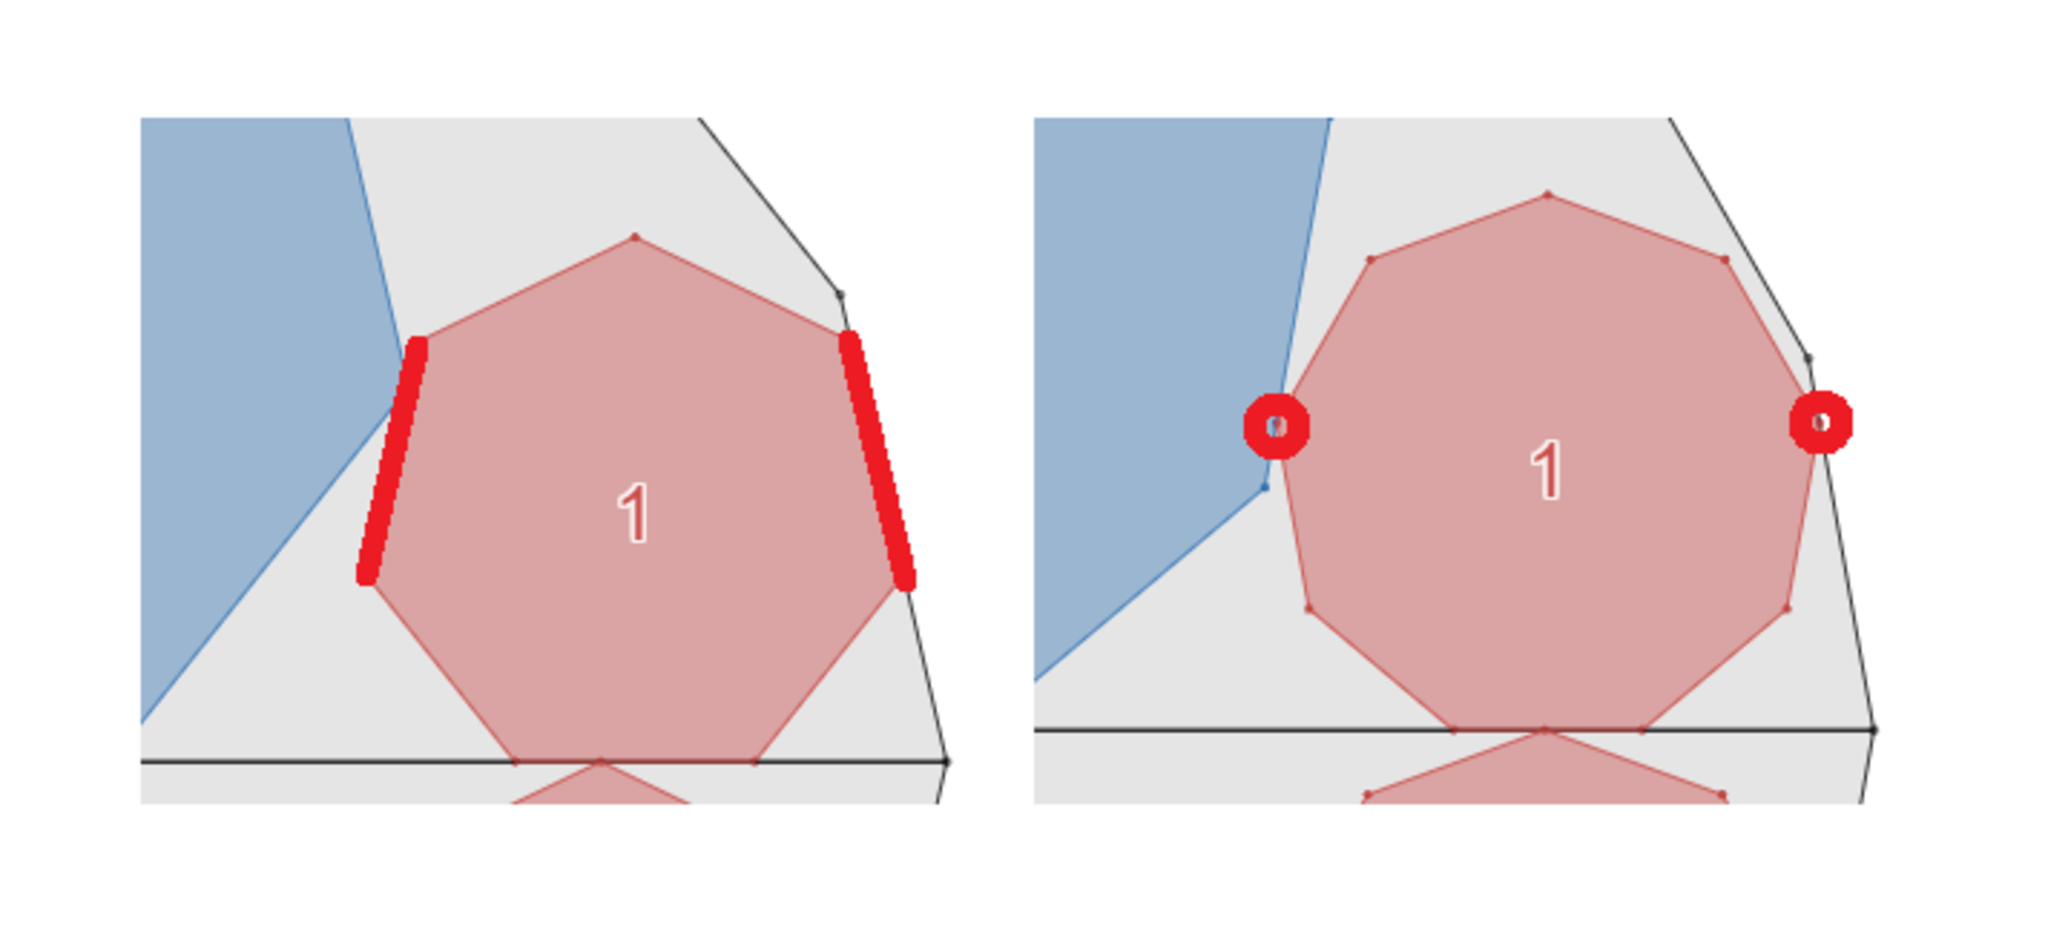 小正多角形の「辺」で接触する場合と「頂点」で接触する場合がある